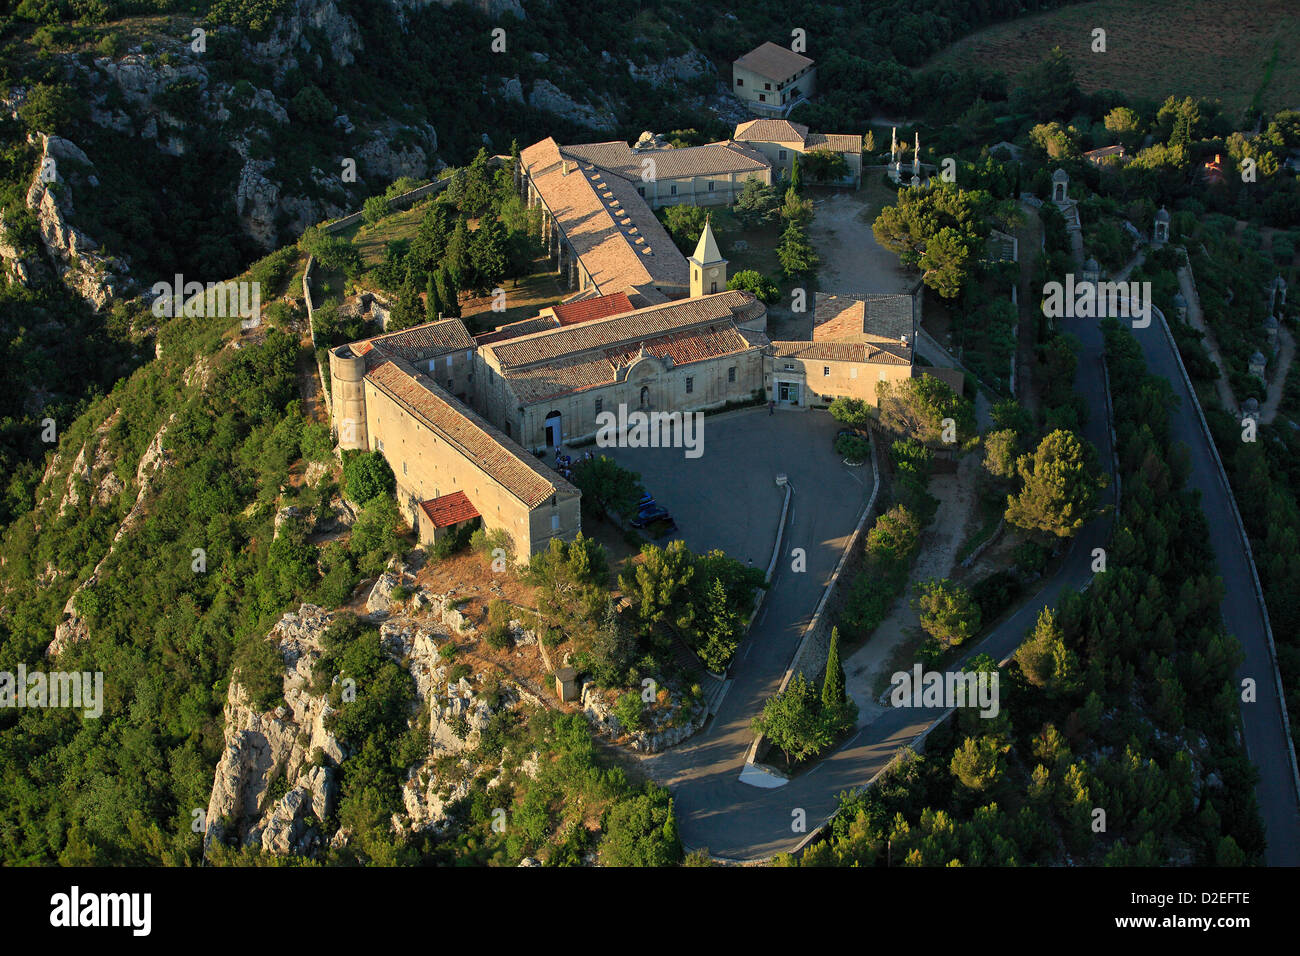 France, Gard (30), Rochefort-du-Gard, Sanctuary Notre-Dame-de-Grâce built on a rocky spur, (aerial photo) Stock Photo